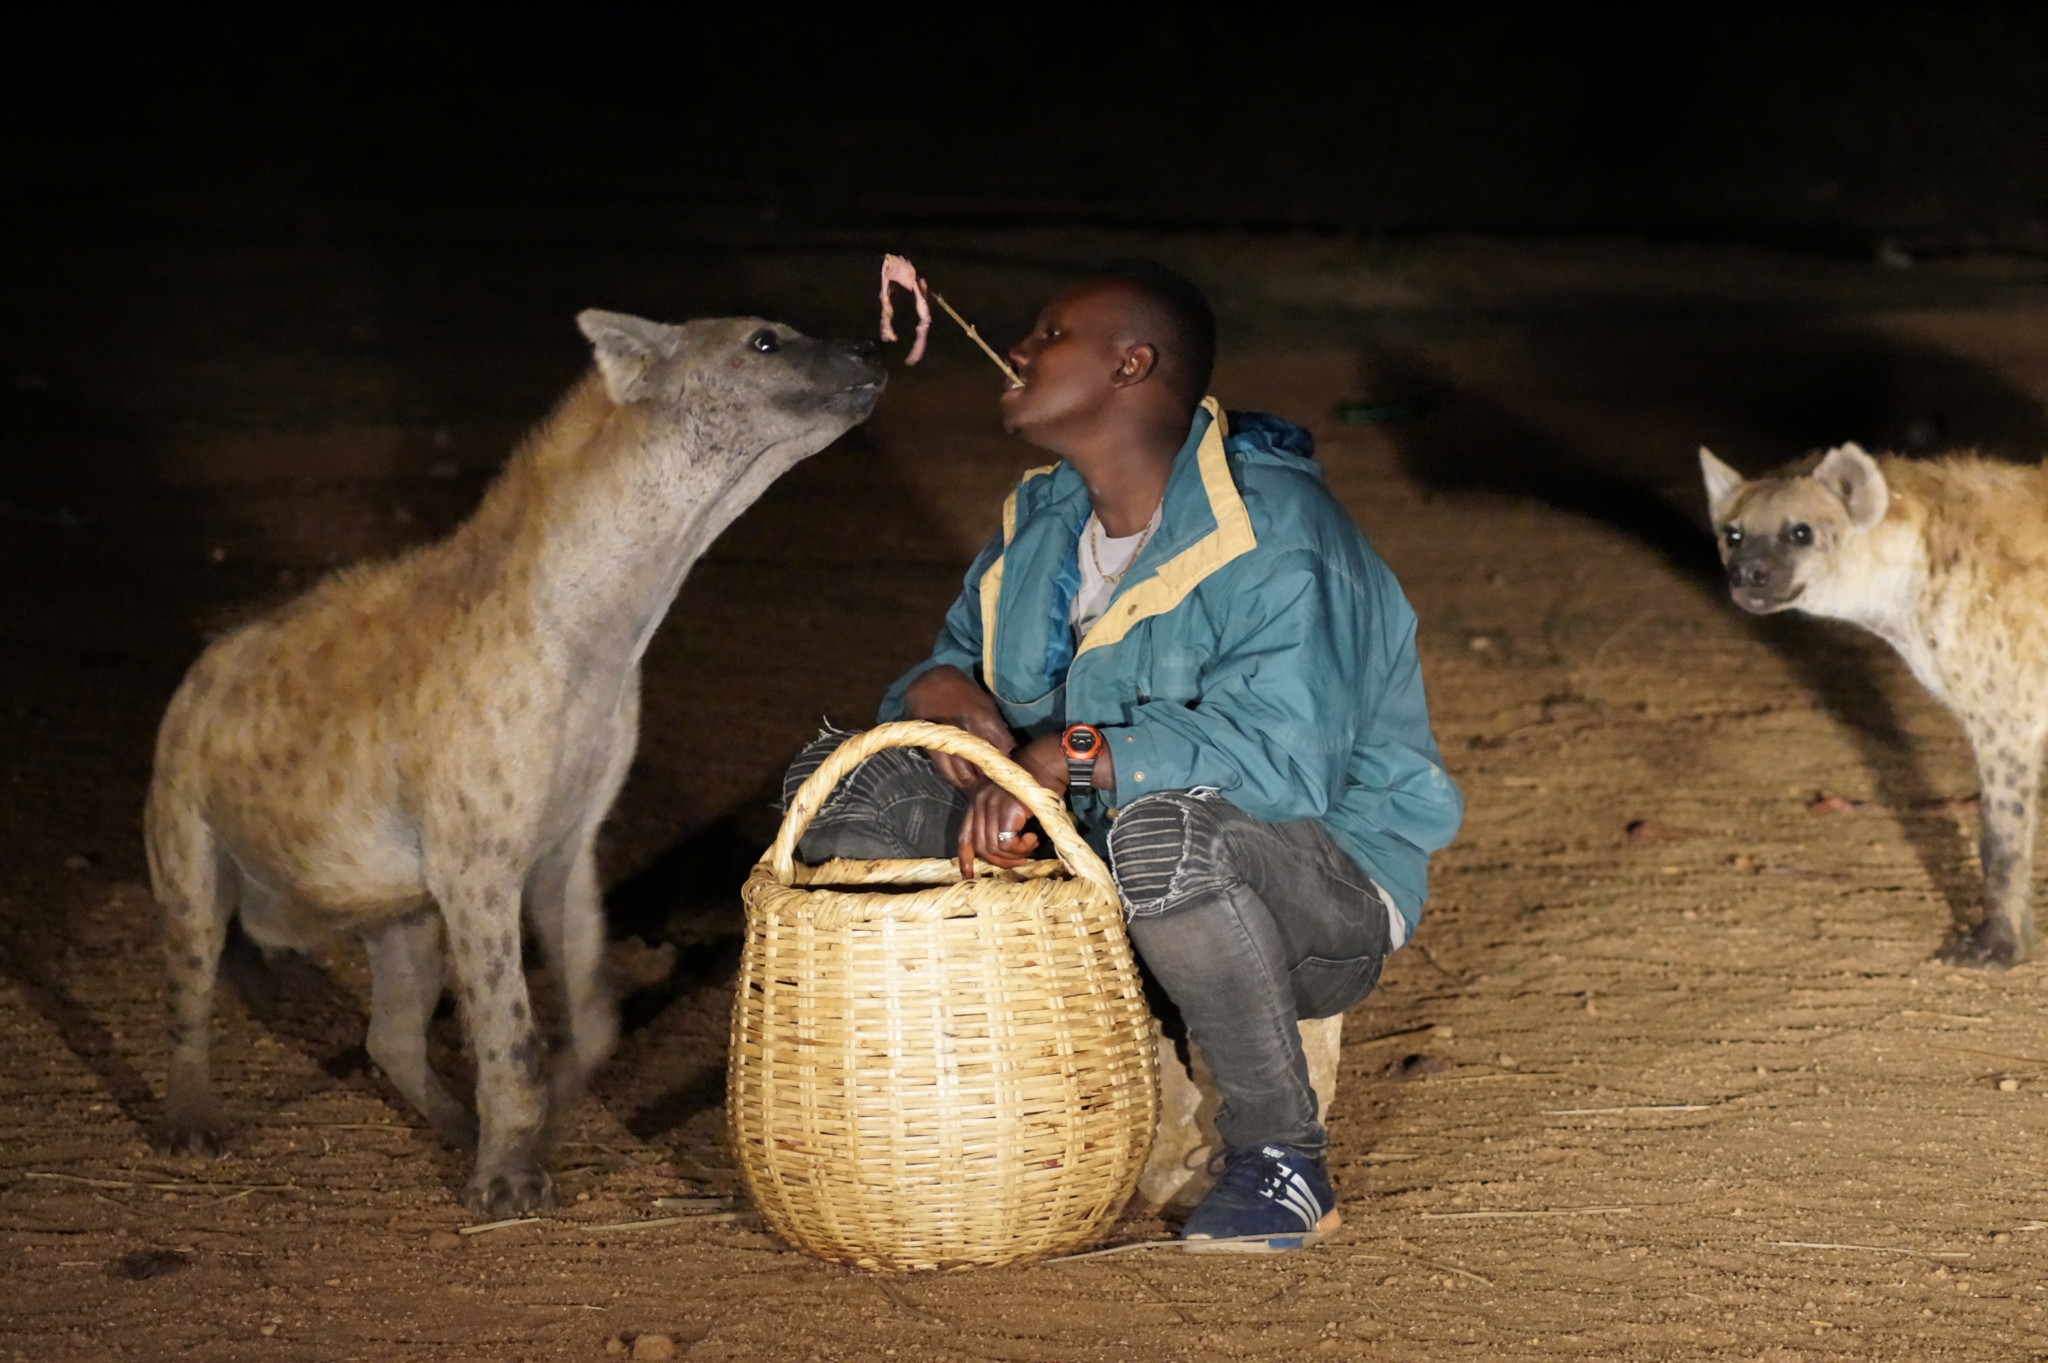 Hyänen von Harar gehören zu den Äthiopien Sehenswürdigkeiten